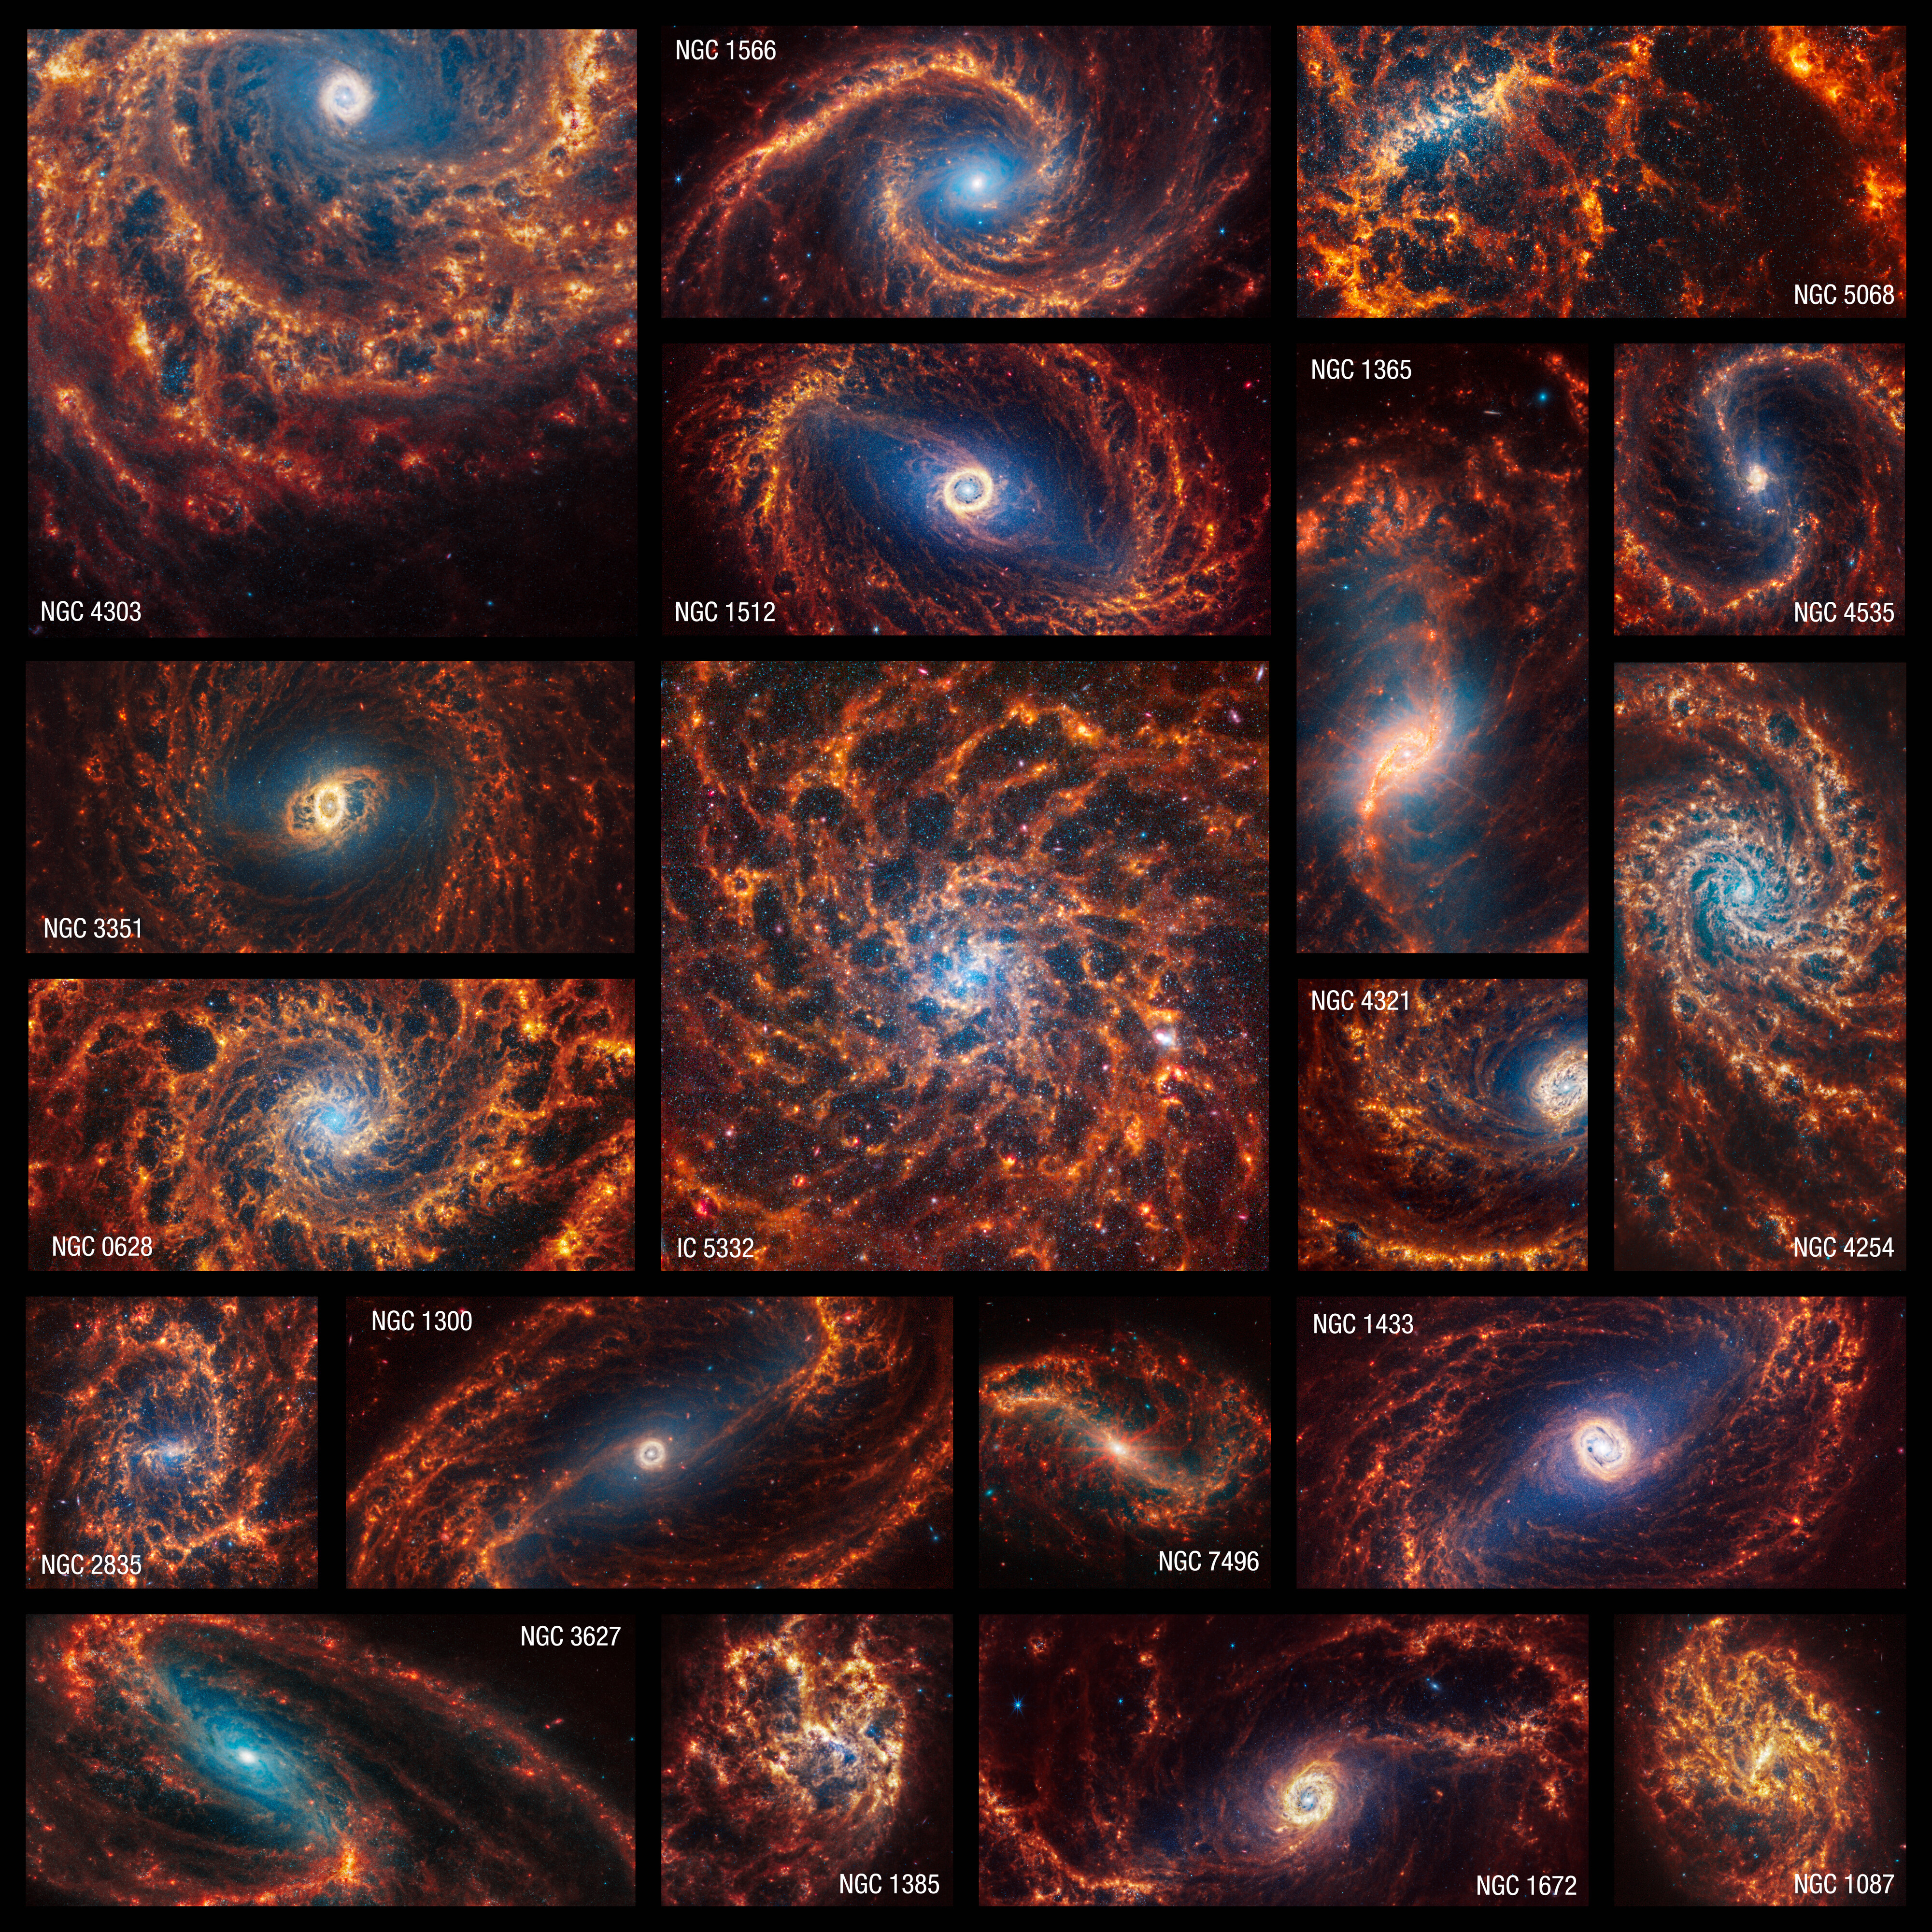 O imagine în mozaic care arată toate cele 19 galaxii recent văzute de telescopul spațial James Webb